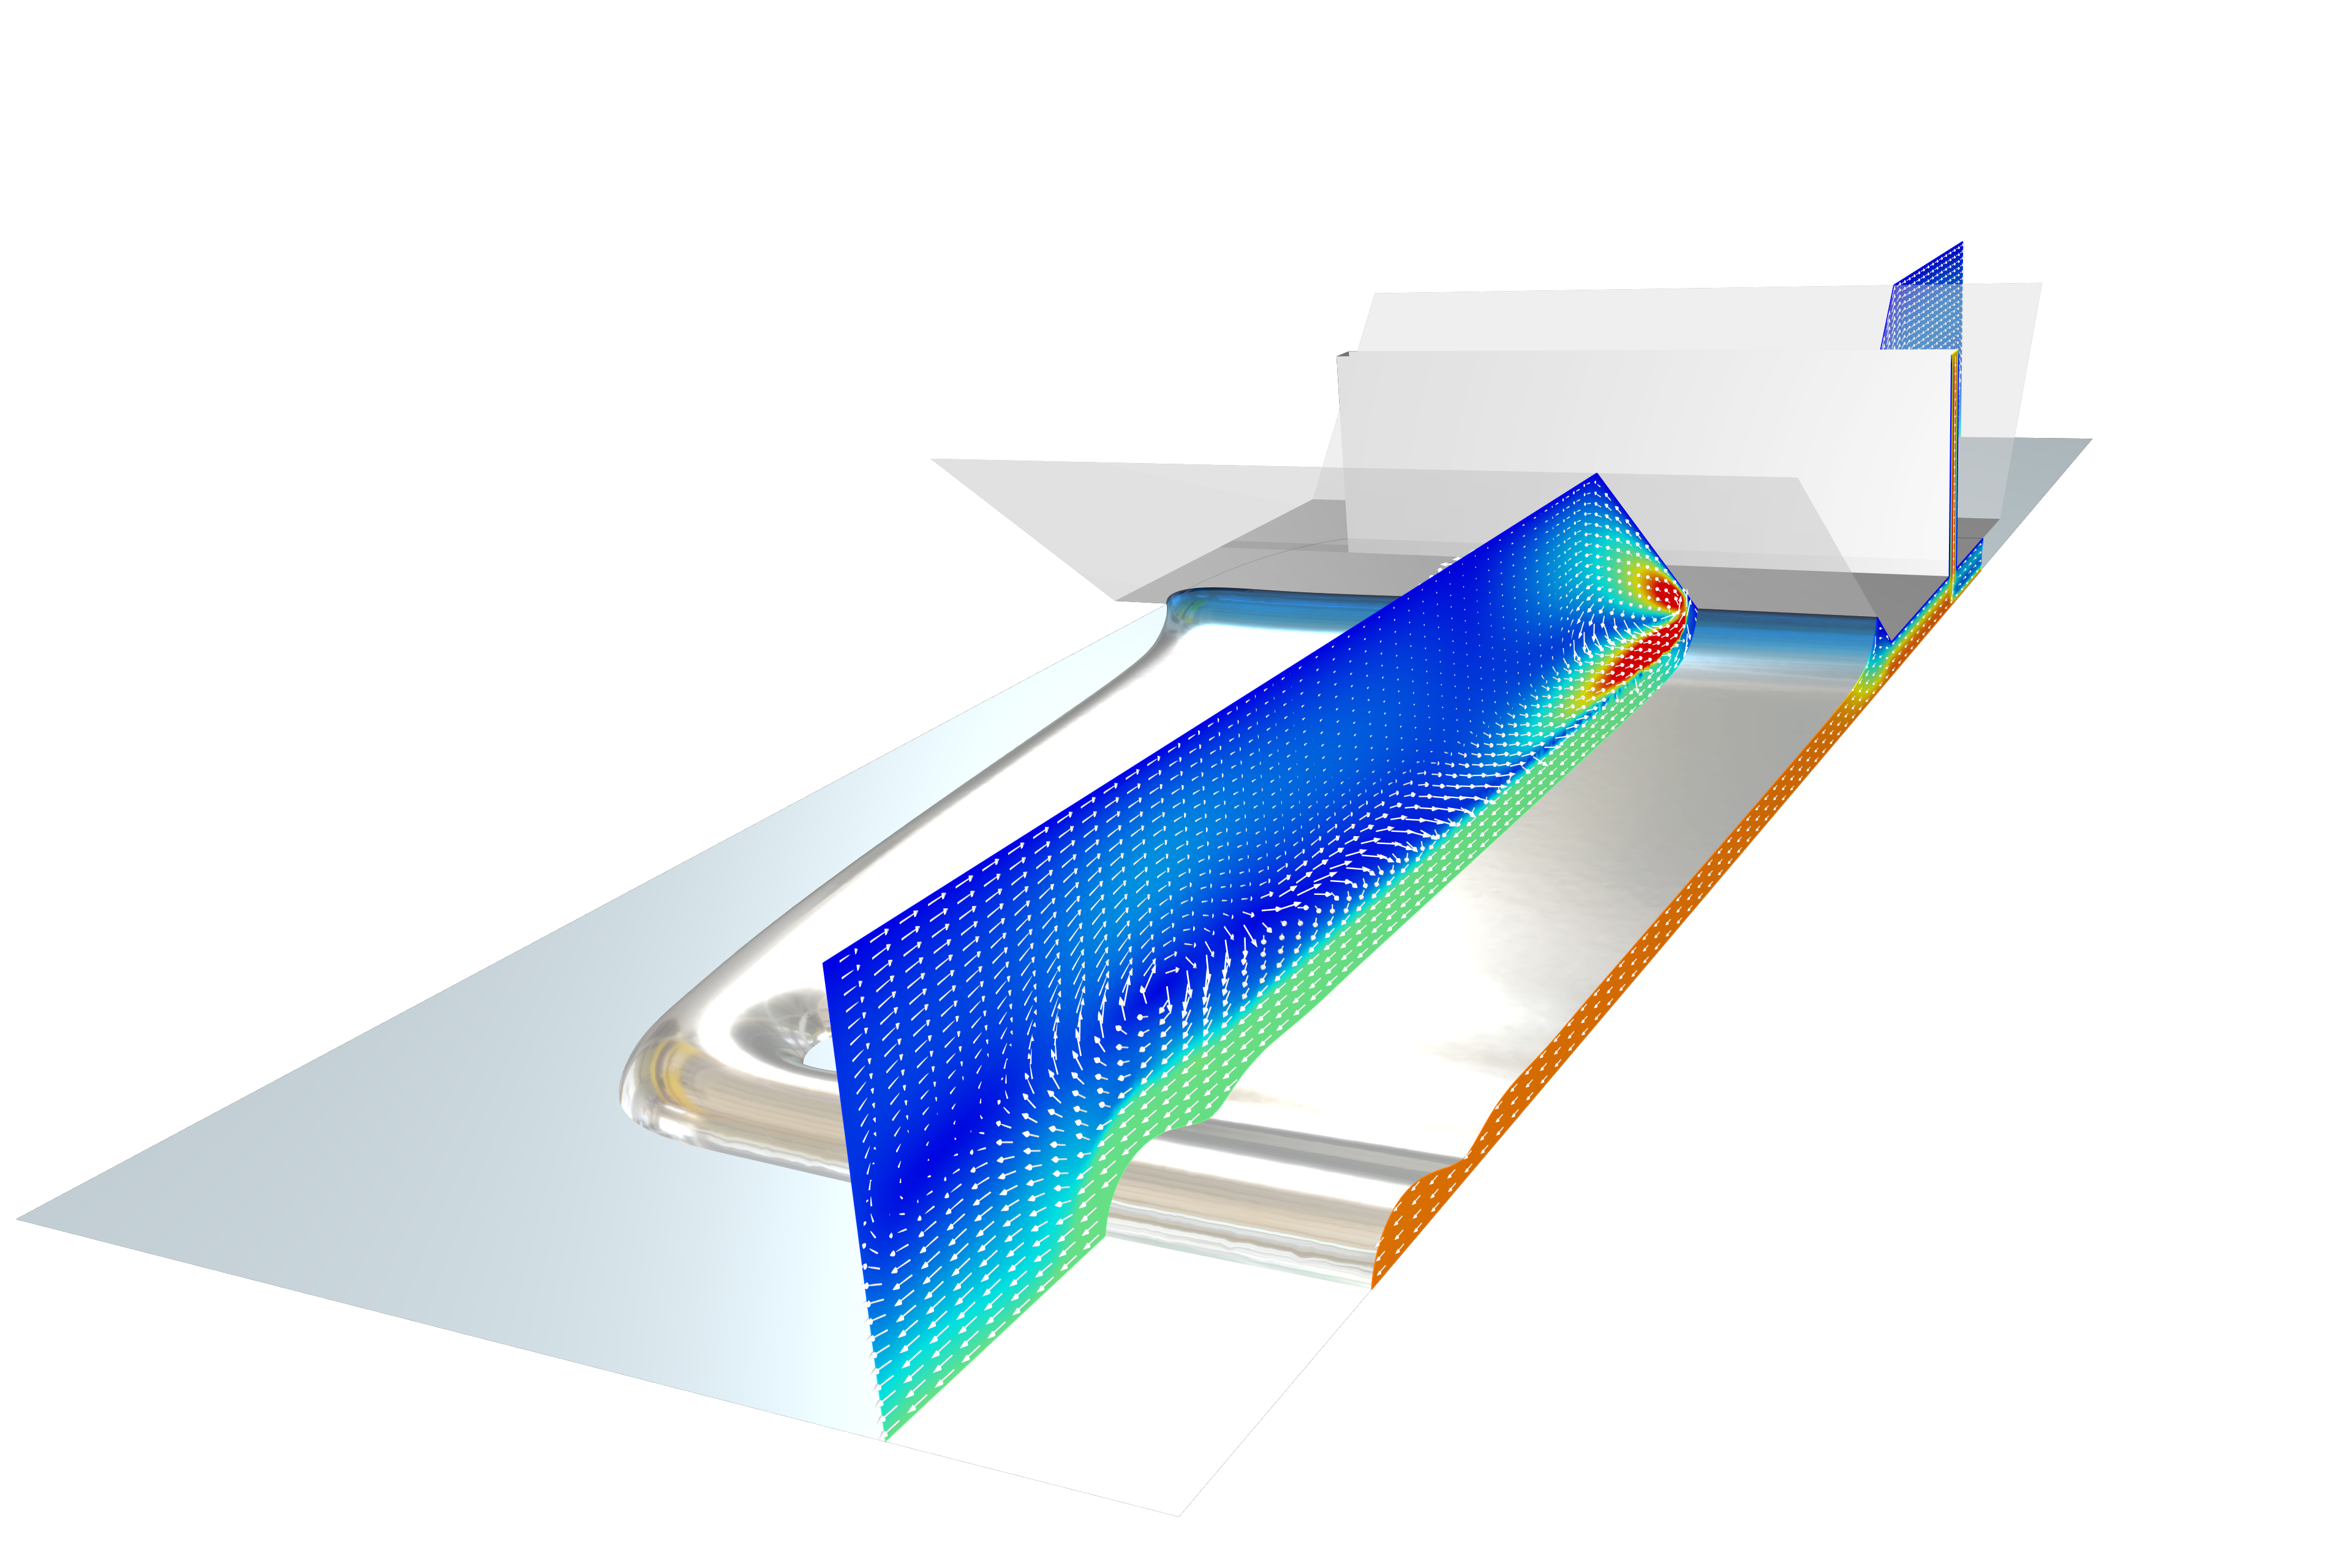 Modello del processo di rivestimento di uno stampo a fessura in grigio metallizzato con un grafico a sezioni in scala arcobaleno.